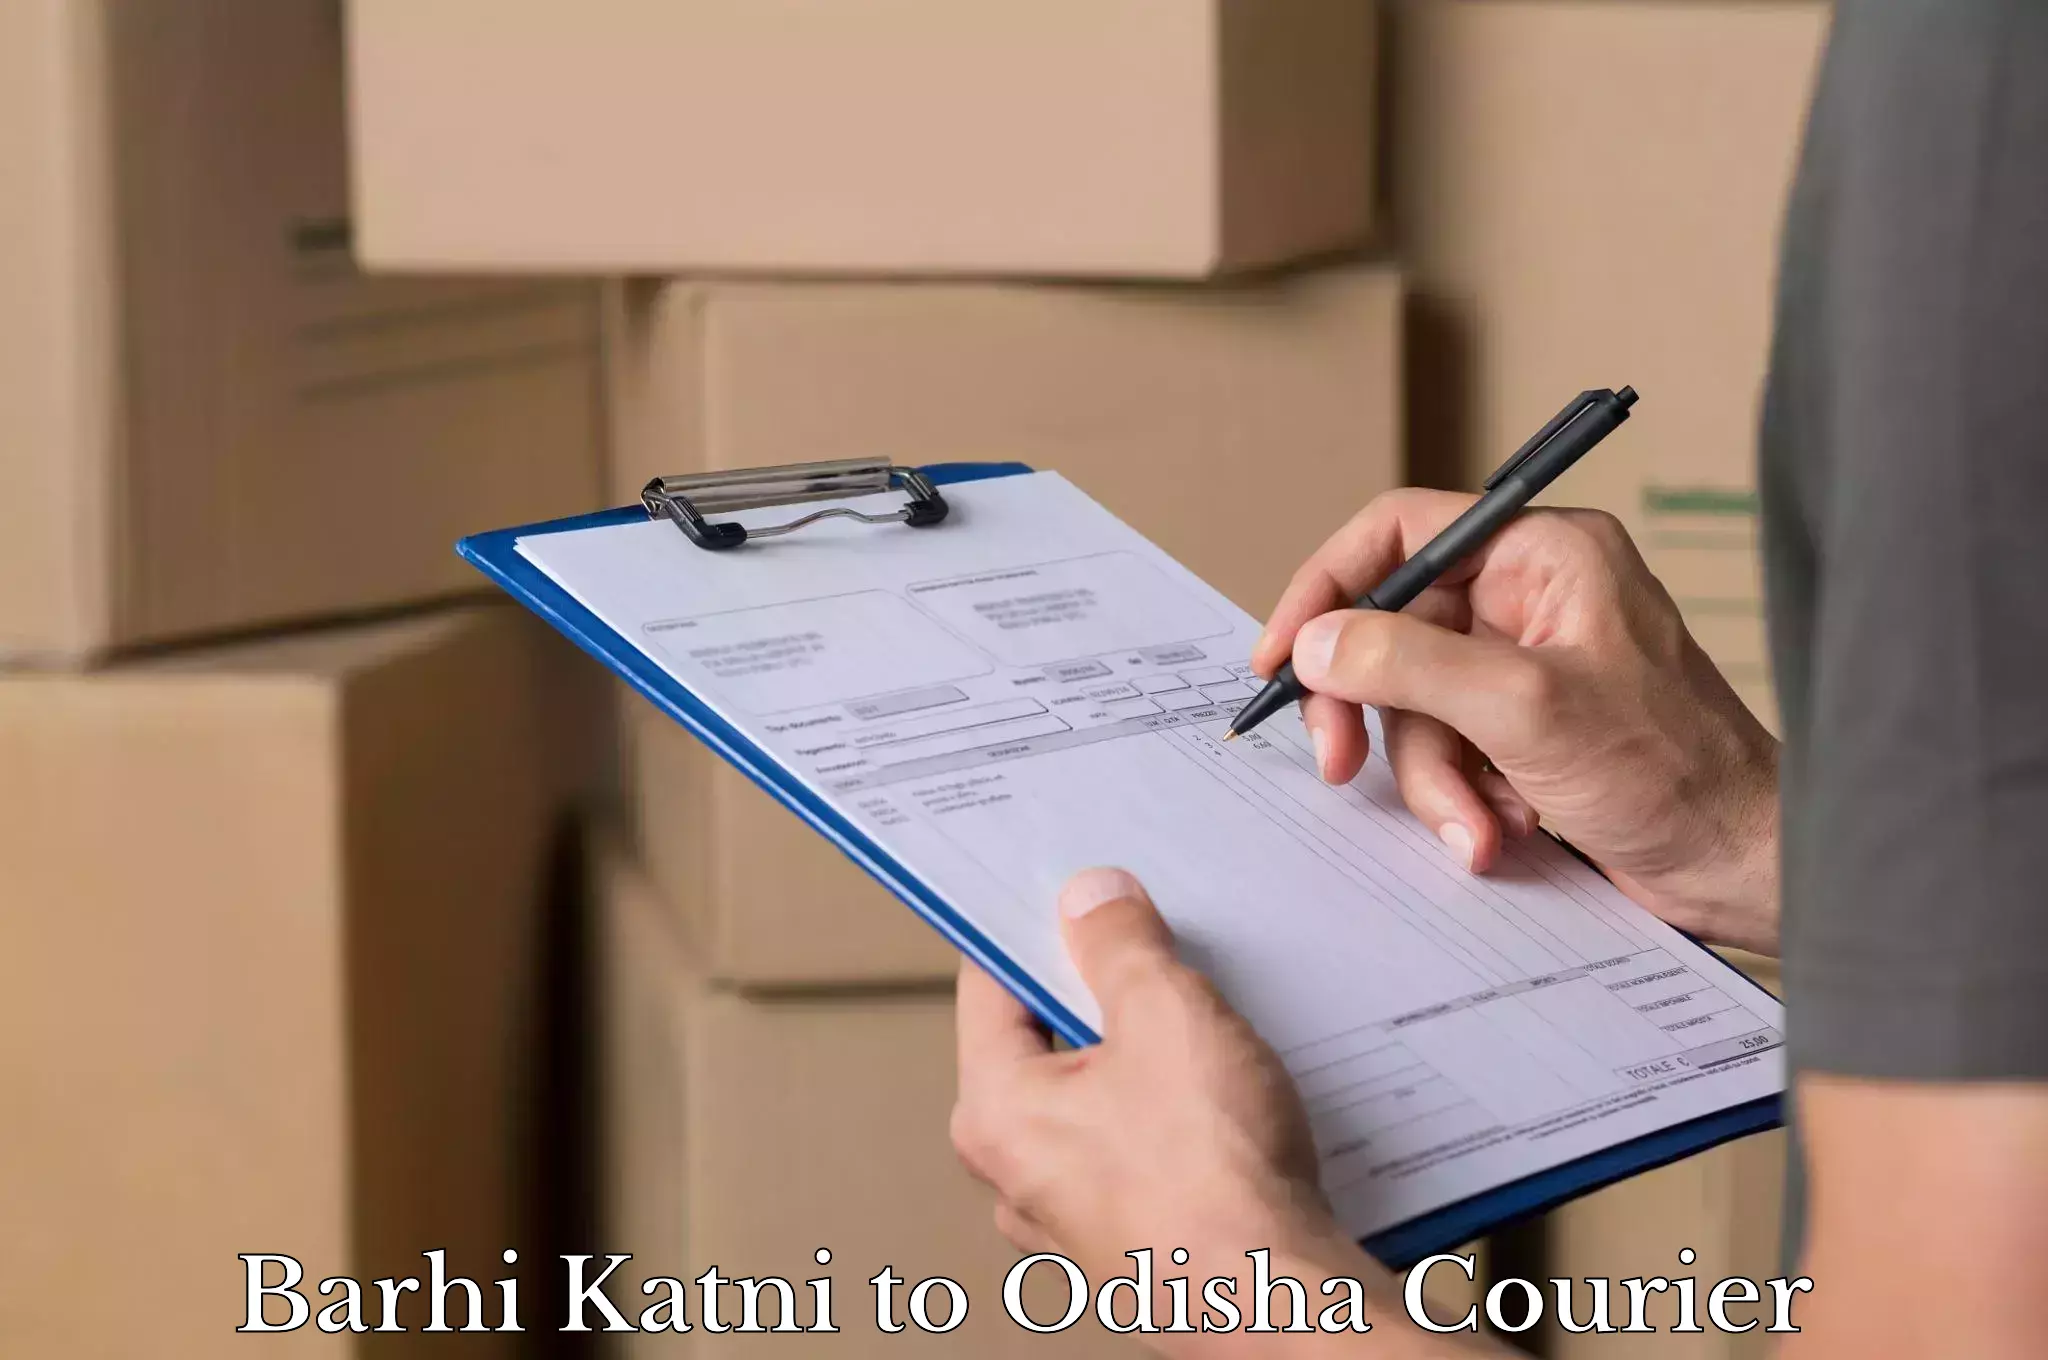 Luggage shipping estimate Barhi Katni to Asika